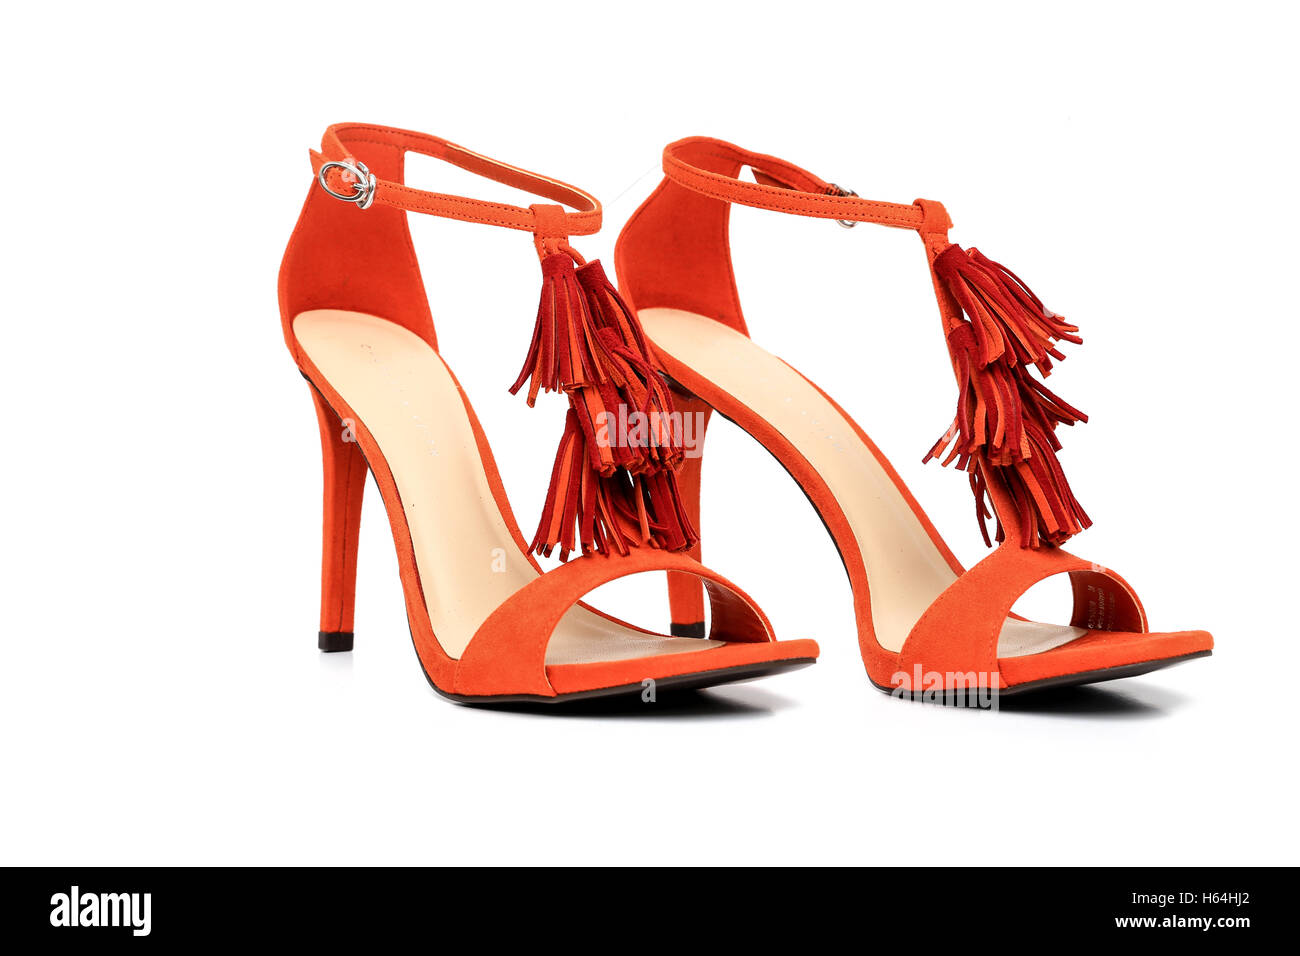 Señoras zapatos de alto Color Naranja Fotografía de stock - Alamy